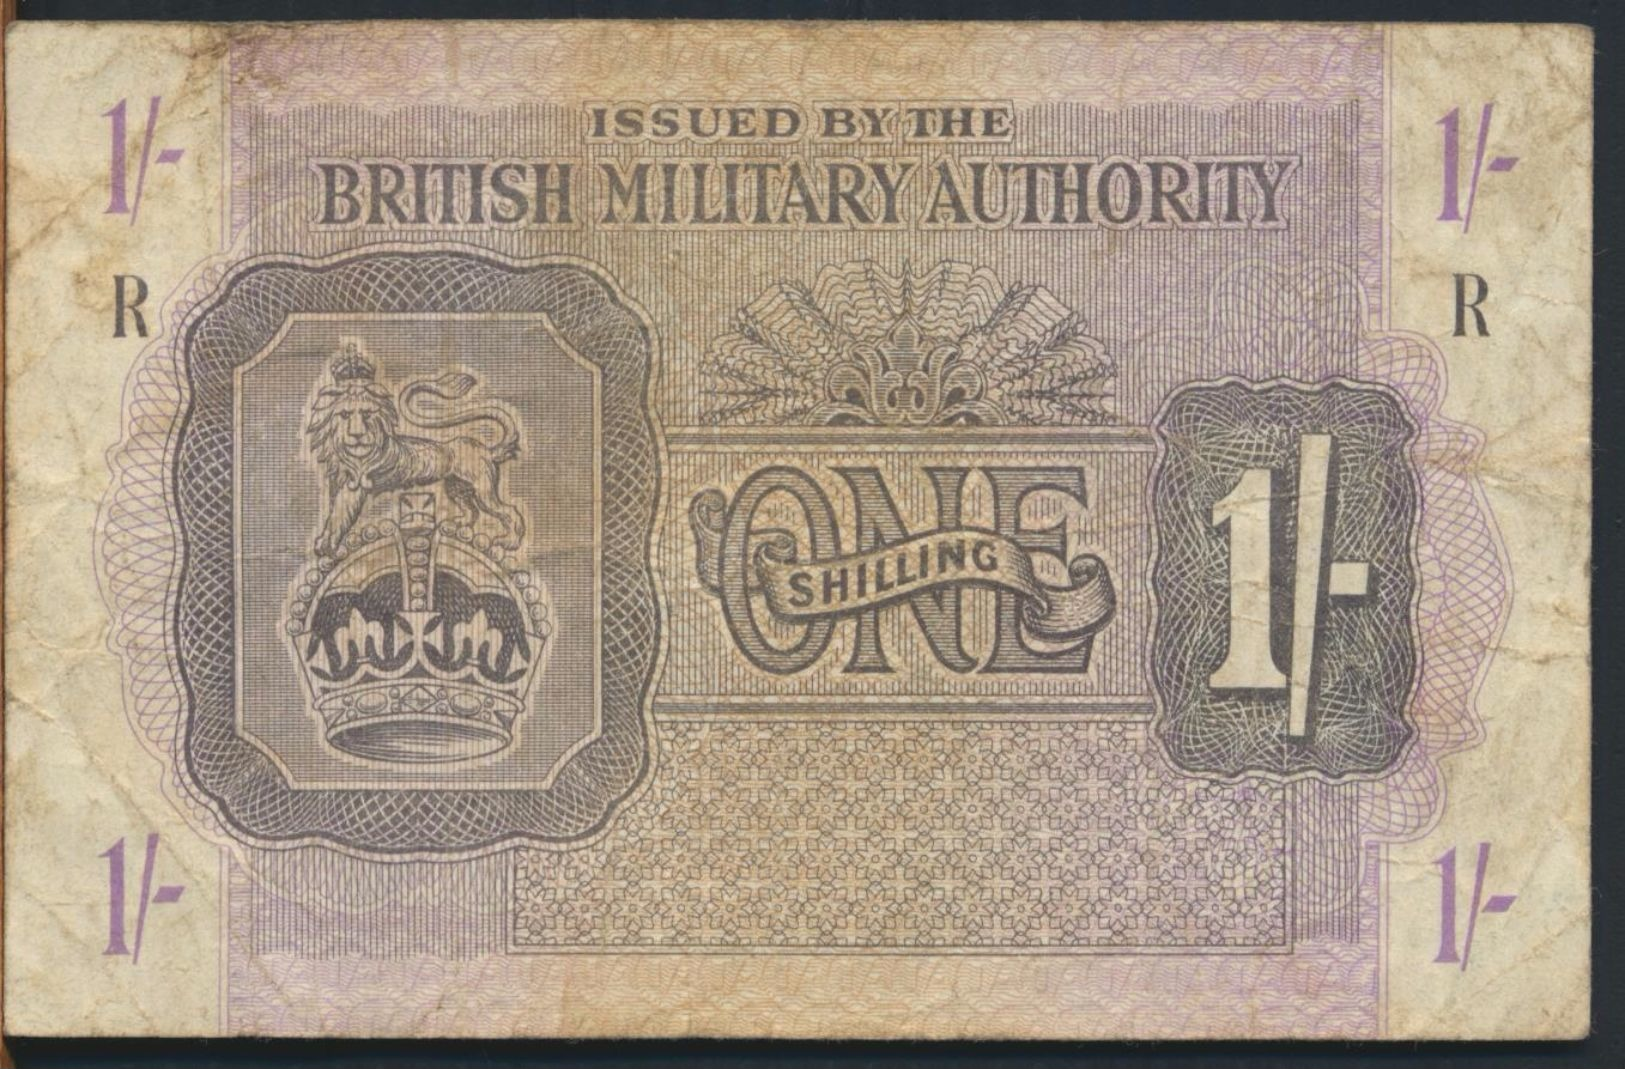 °°° UK - BRITISH MILITARY AUTHORITY 1 POUND R °°° - Autorità Militare Britannica